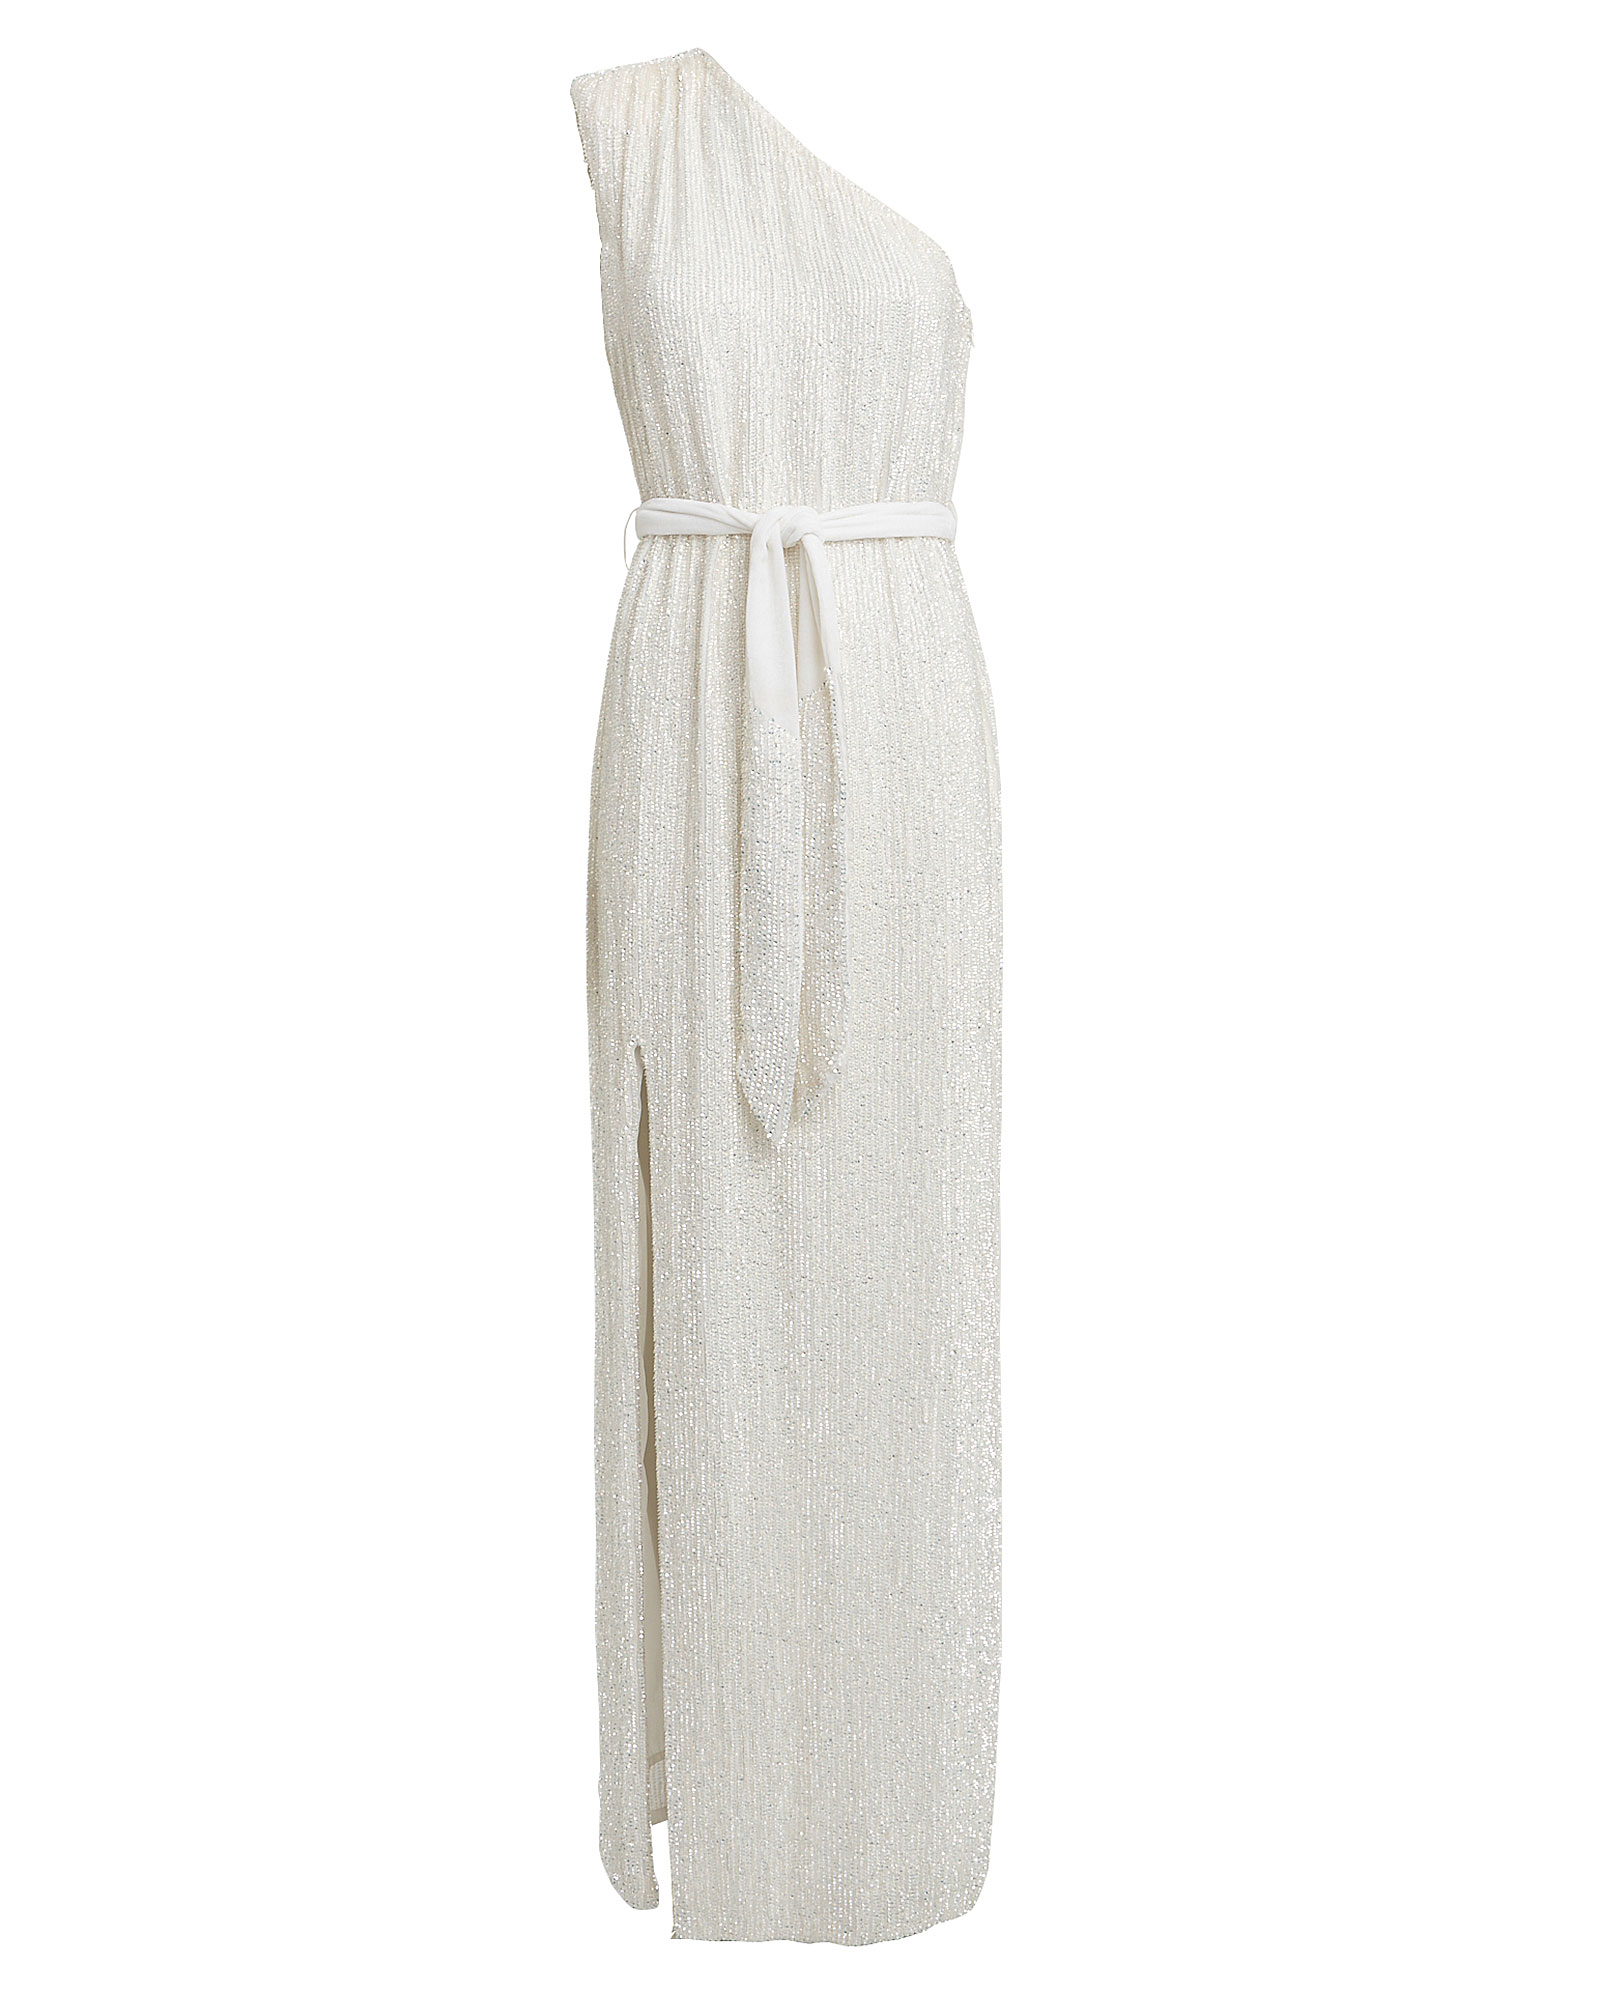 Retrofête | Vivien One-Shoulder Sequin Gown | INTERMIX®